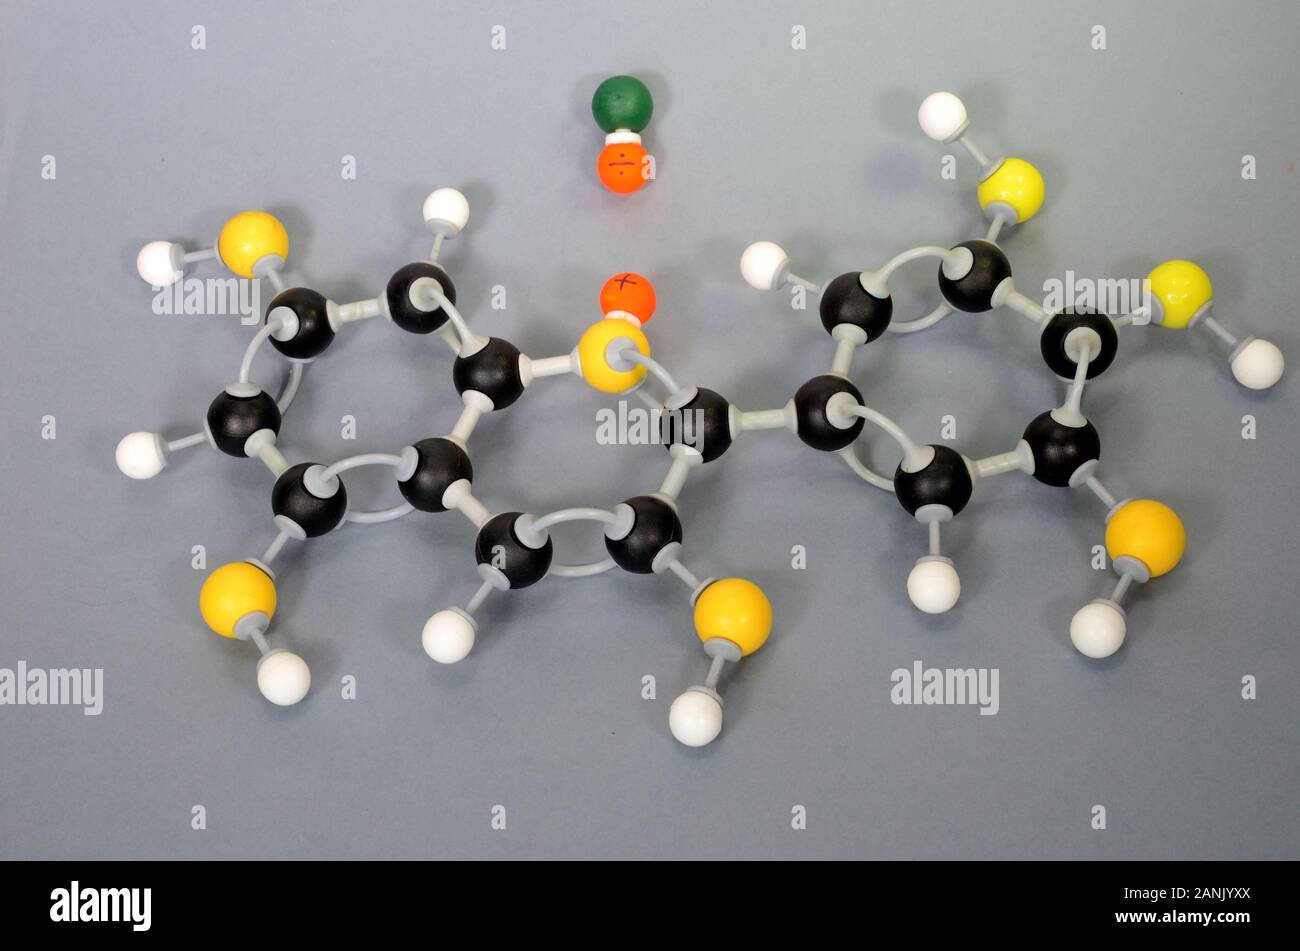 Modello di molecola di paraffina. Il bianco è idrogeno, il nero di carbonio è giallo è ossigeno e il verde è cloro. Le sfere di colore arancione rappresentano le cariche in un coor Foto Stock